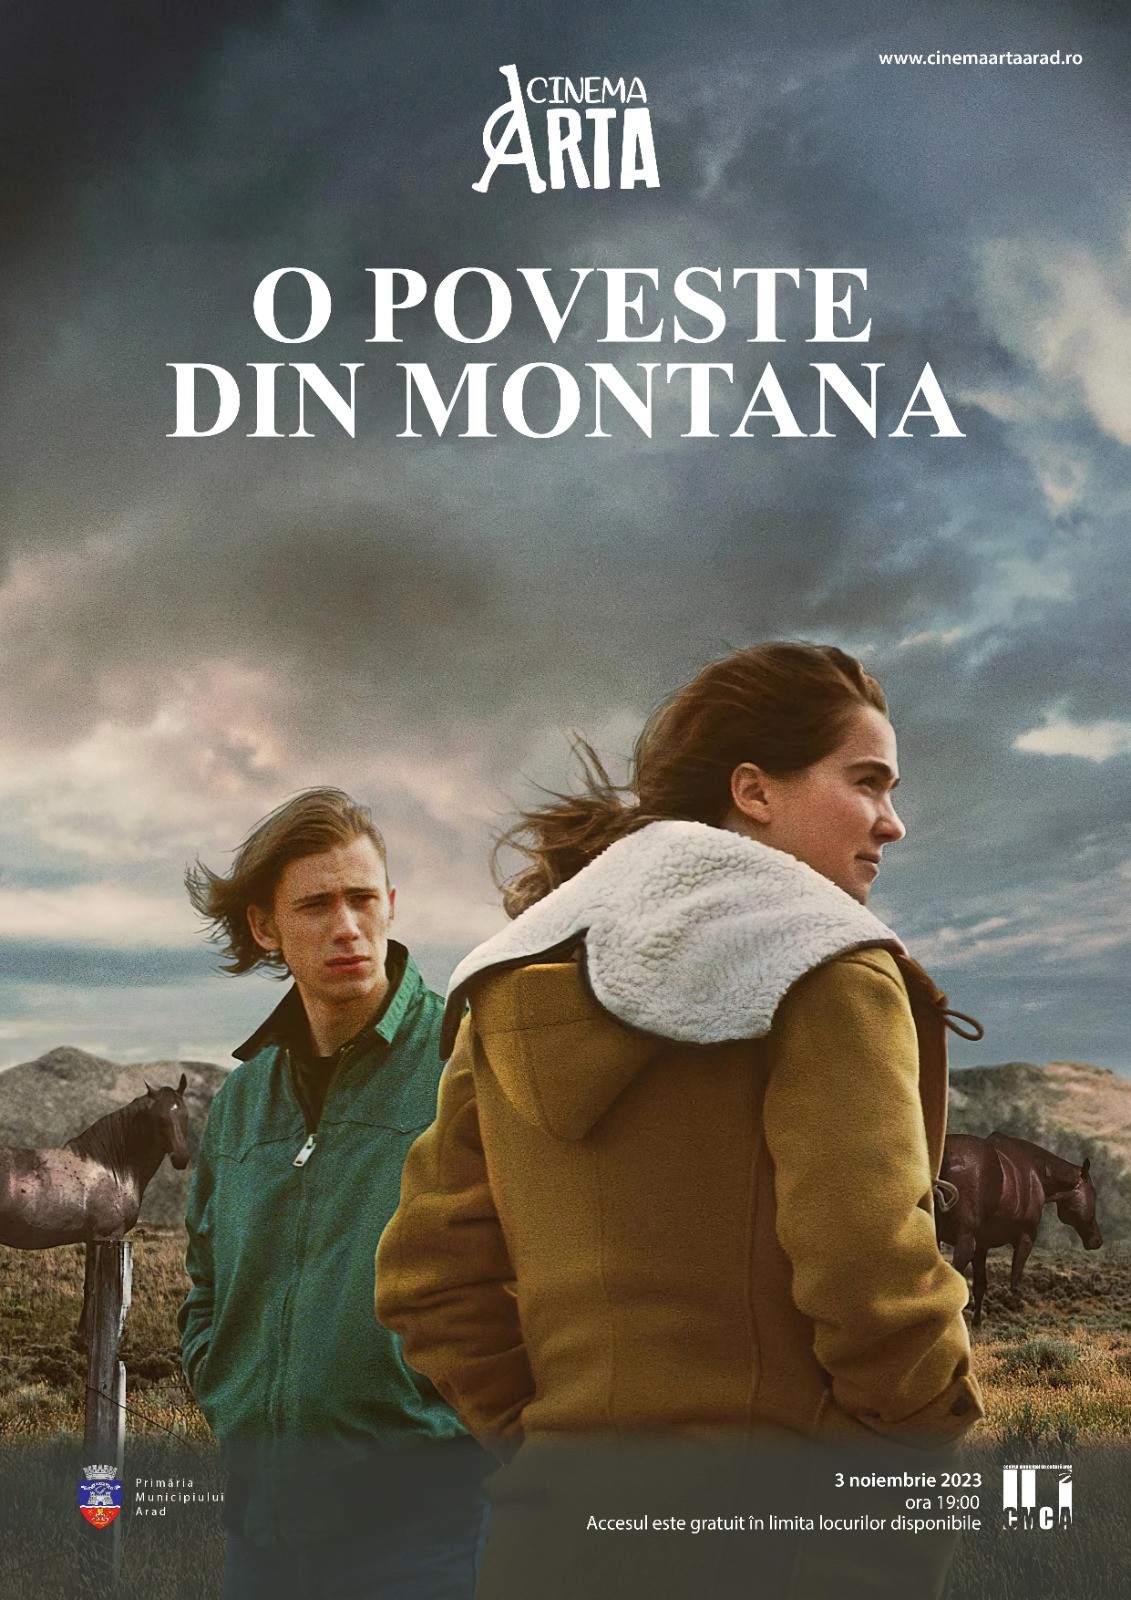 Filmul „O poveste din Montana“, va fi proiectat la Cinematograful „Arta“ din Arad